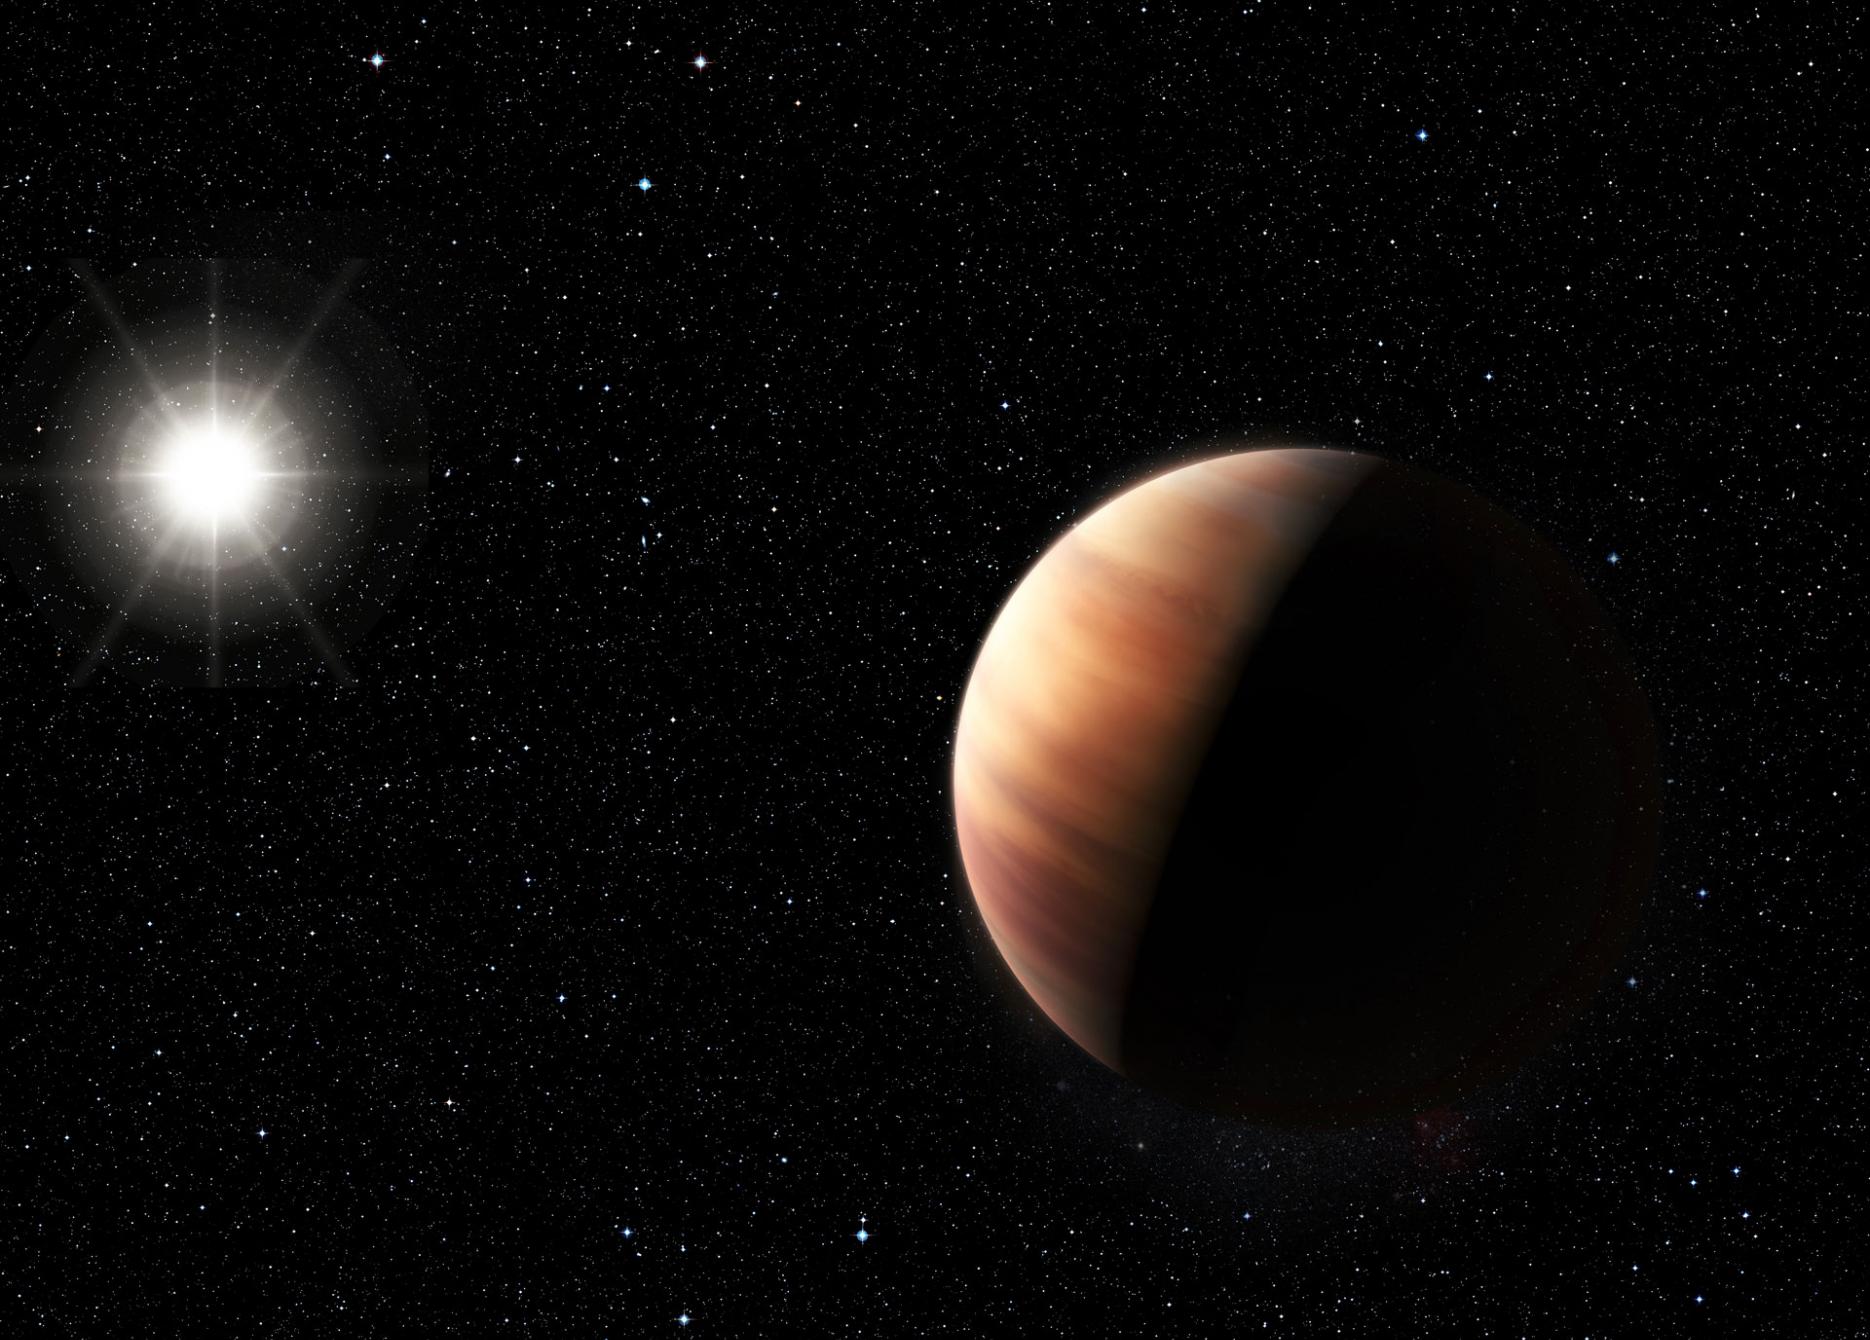 天文学家发现一颗类似木星的行星围绕一颗类似太阳的恒星HIP 11915运转